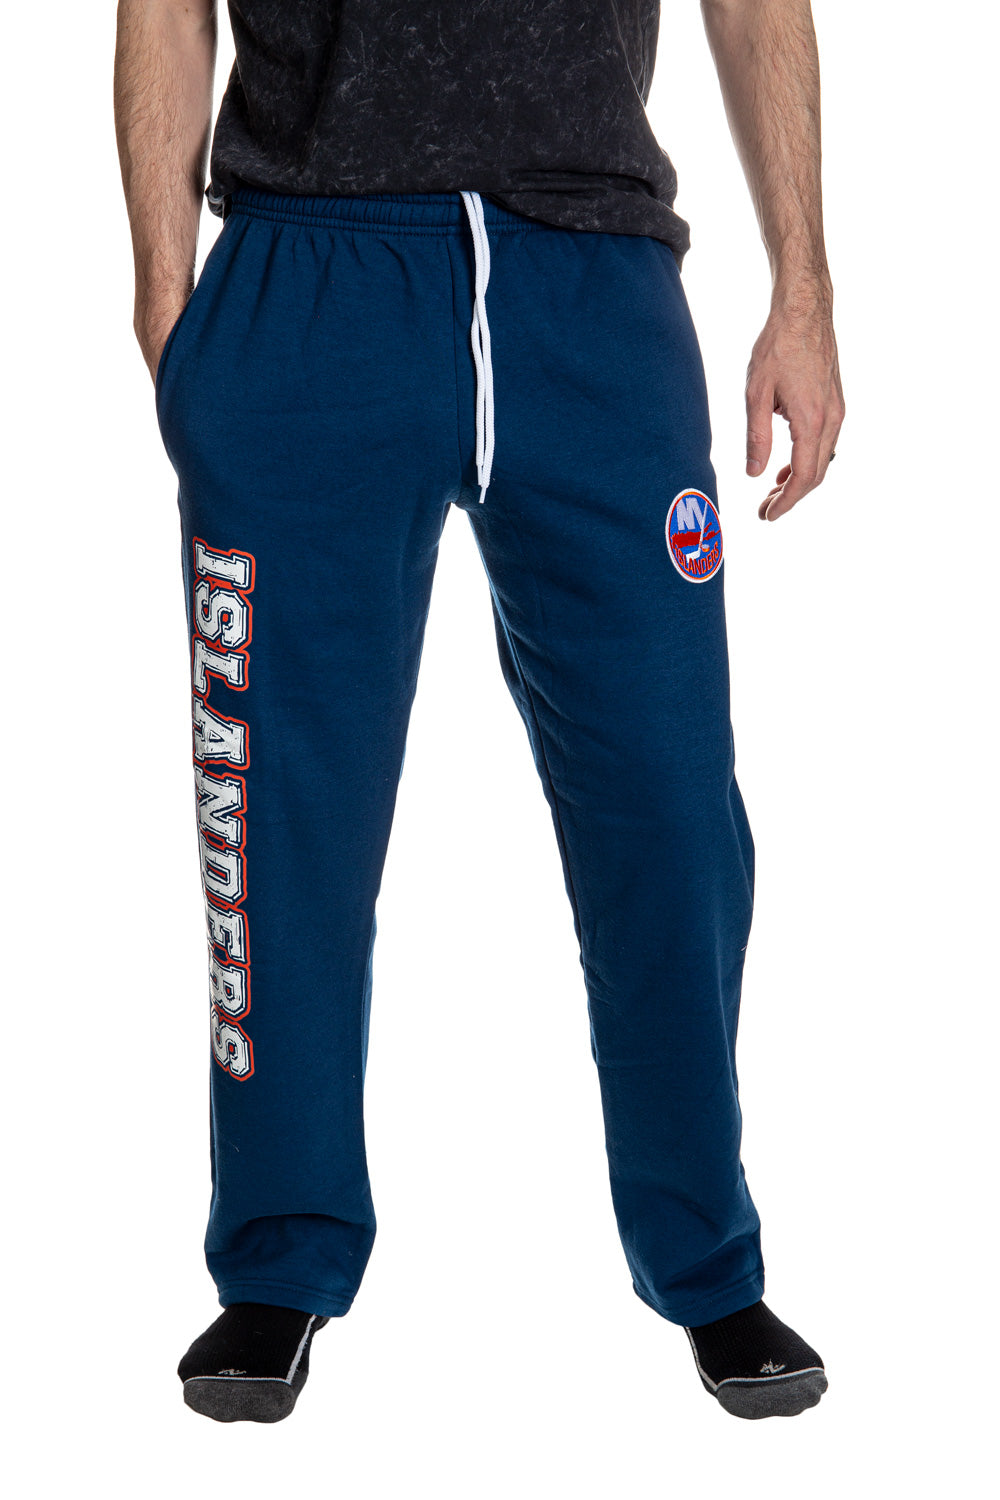 New York Islanders Premium Fleece Sweatpants Front View.